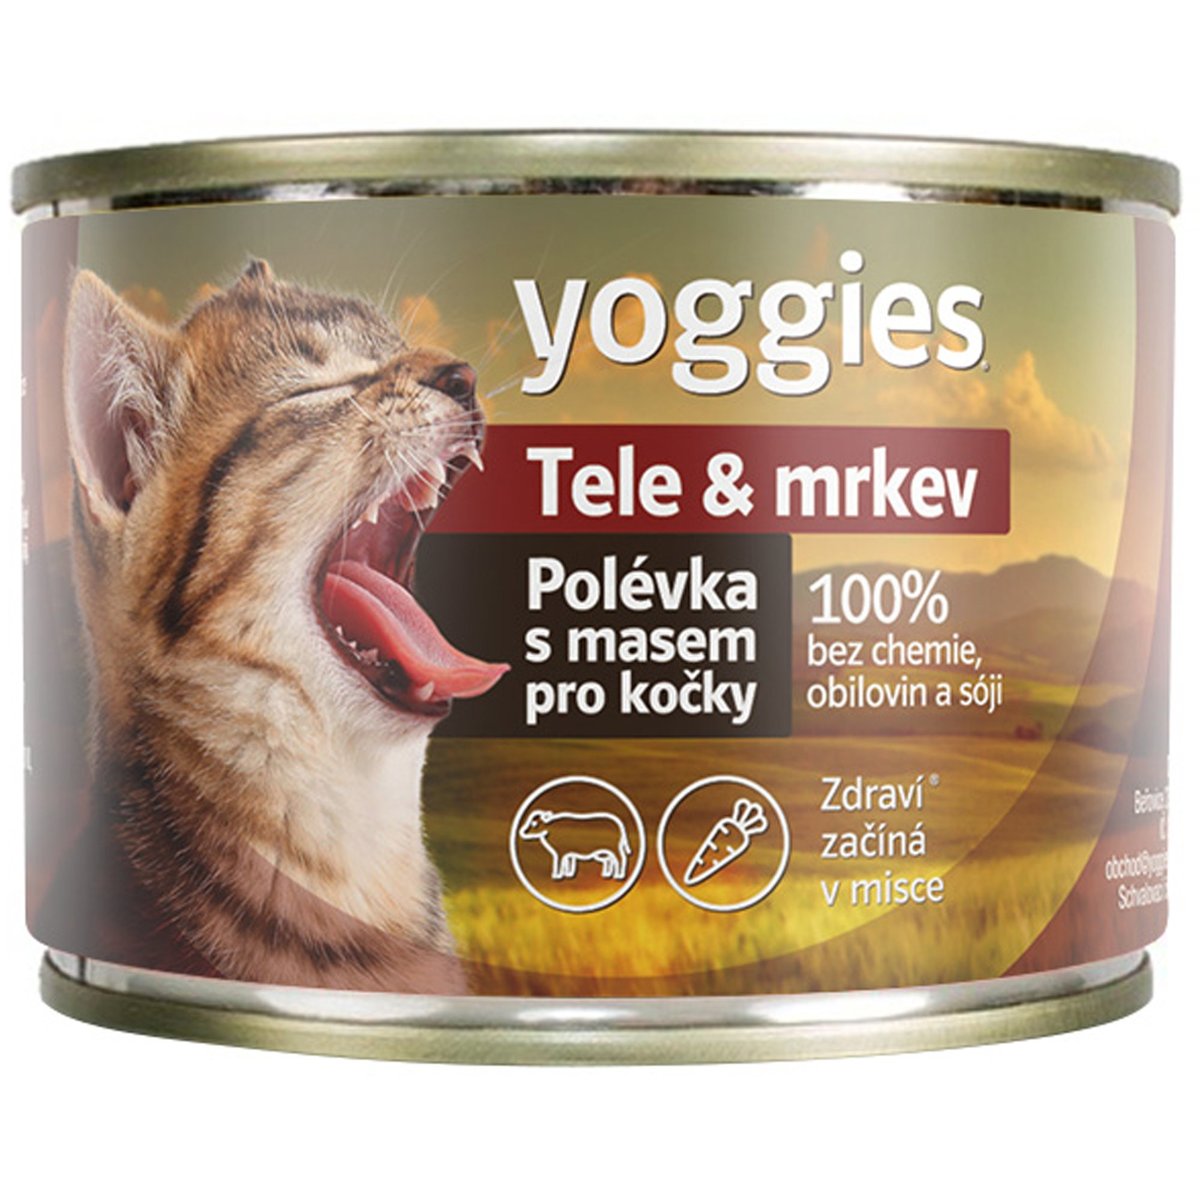 Yoggies Polévka pro kočky tele a mrkev